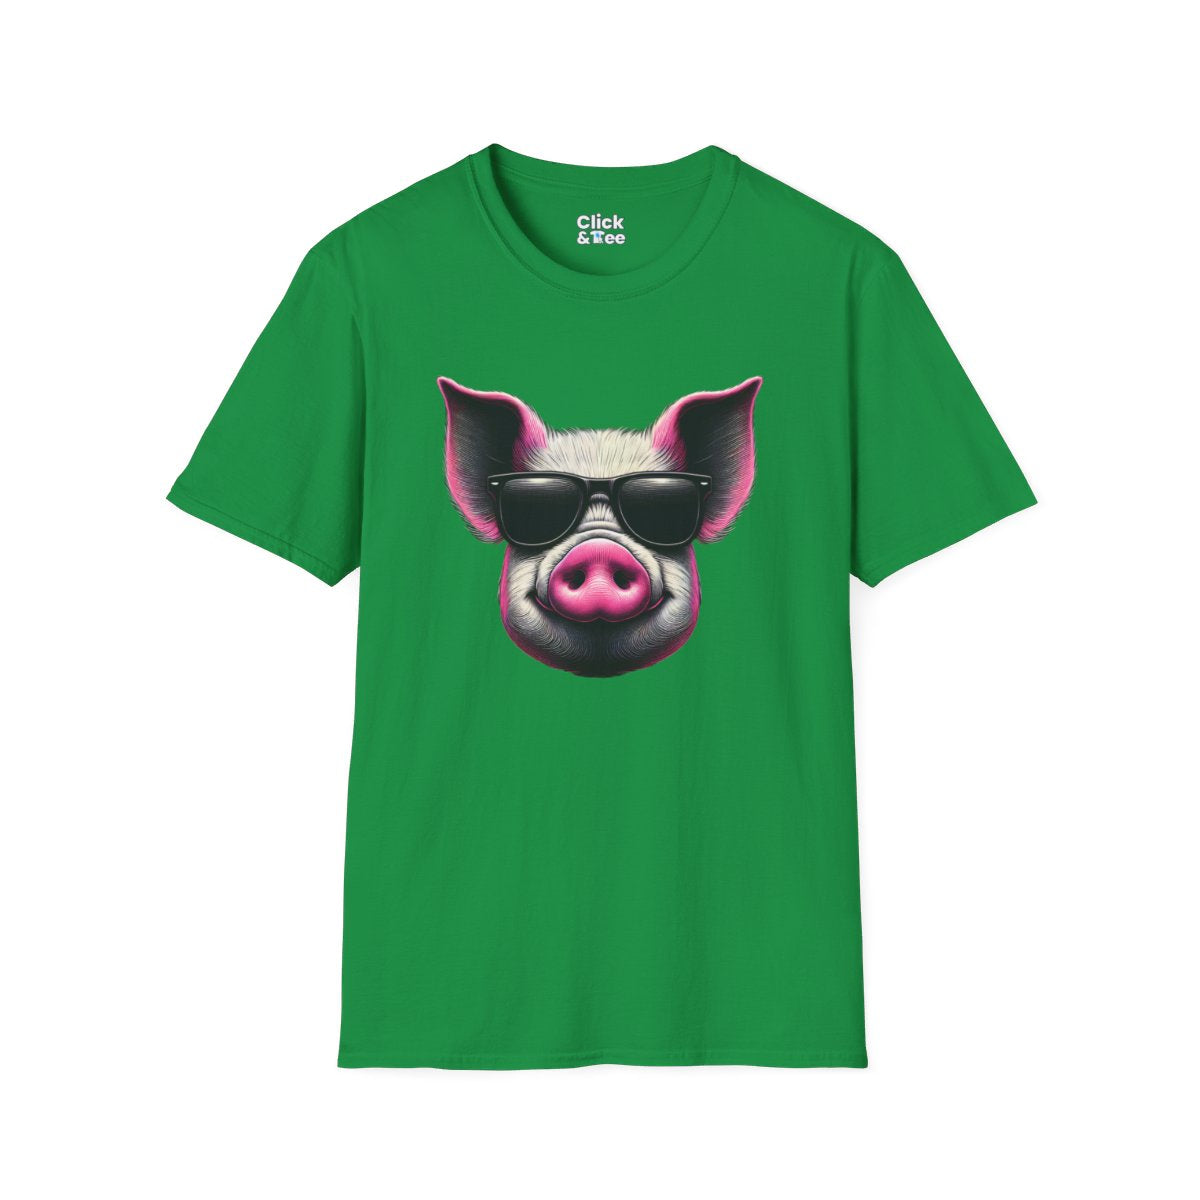 Graphic ArtPink Pig Face Unique T-Shirt Image 12